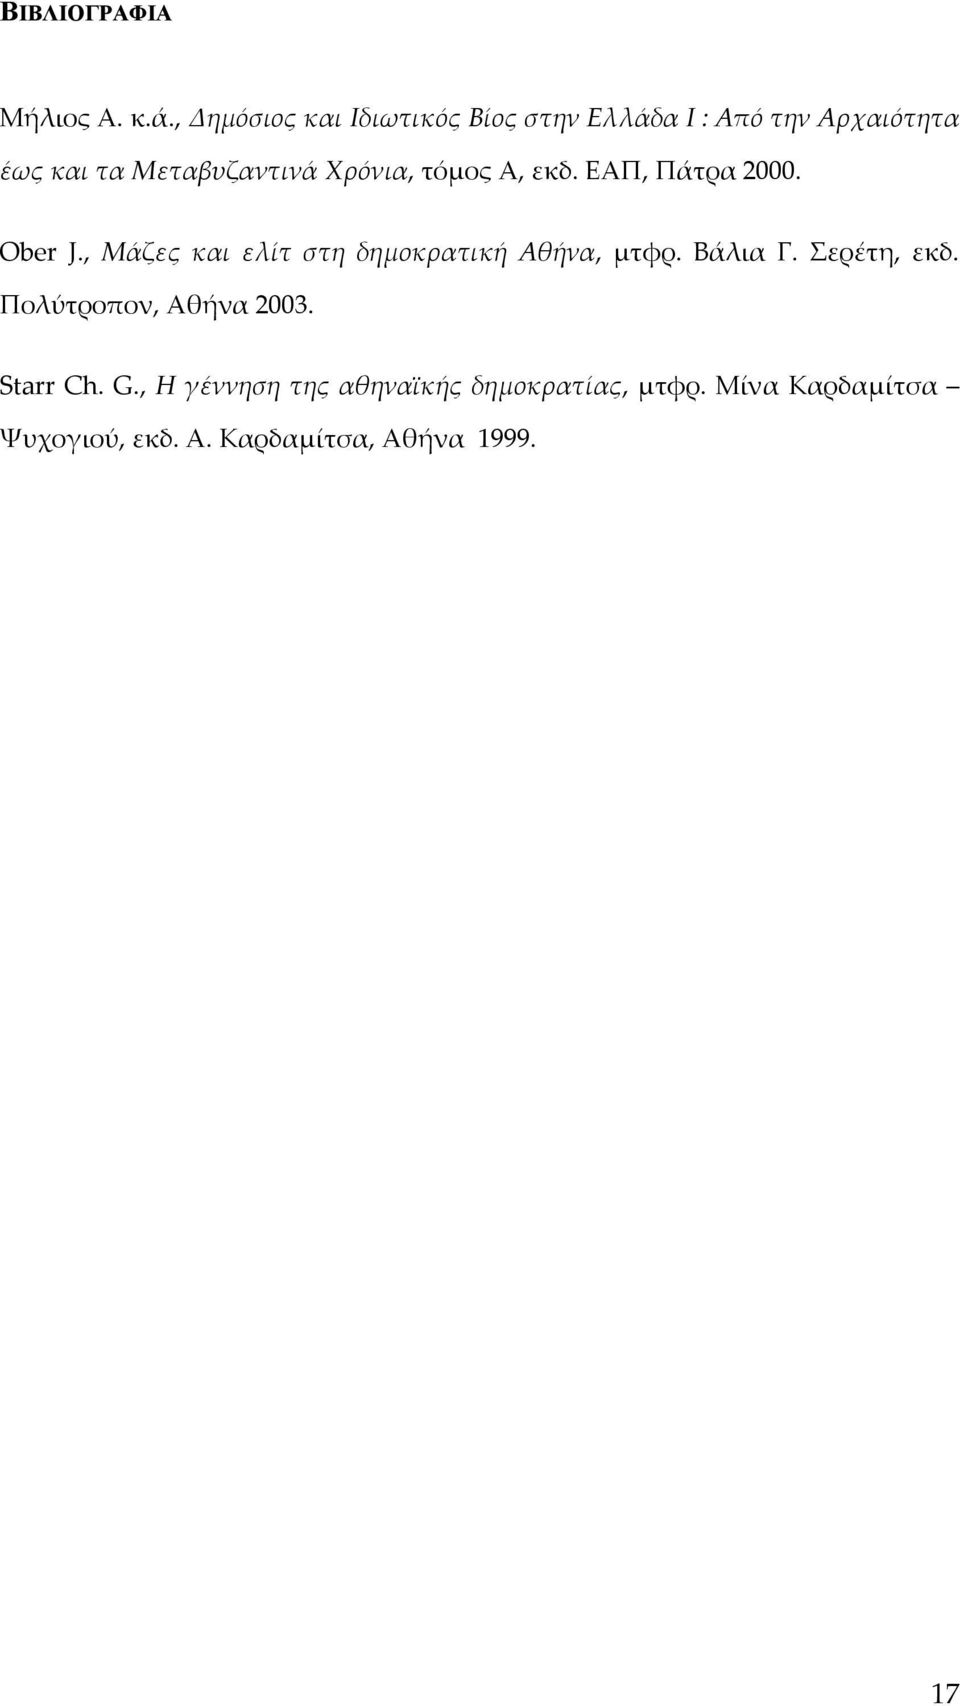 Χρόνια, τόμος Α, εκδ. ΕΑΠ, Πάτρα 2000. Ober J., Μάζες και ελίτ στη δημοκρατική Αθήνα, μτφρ.